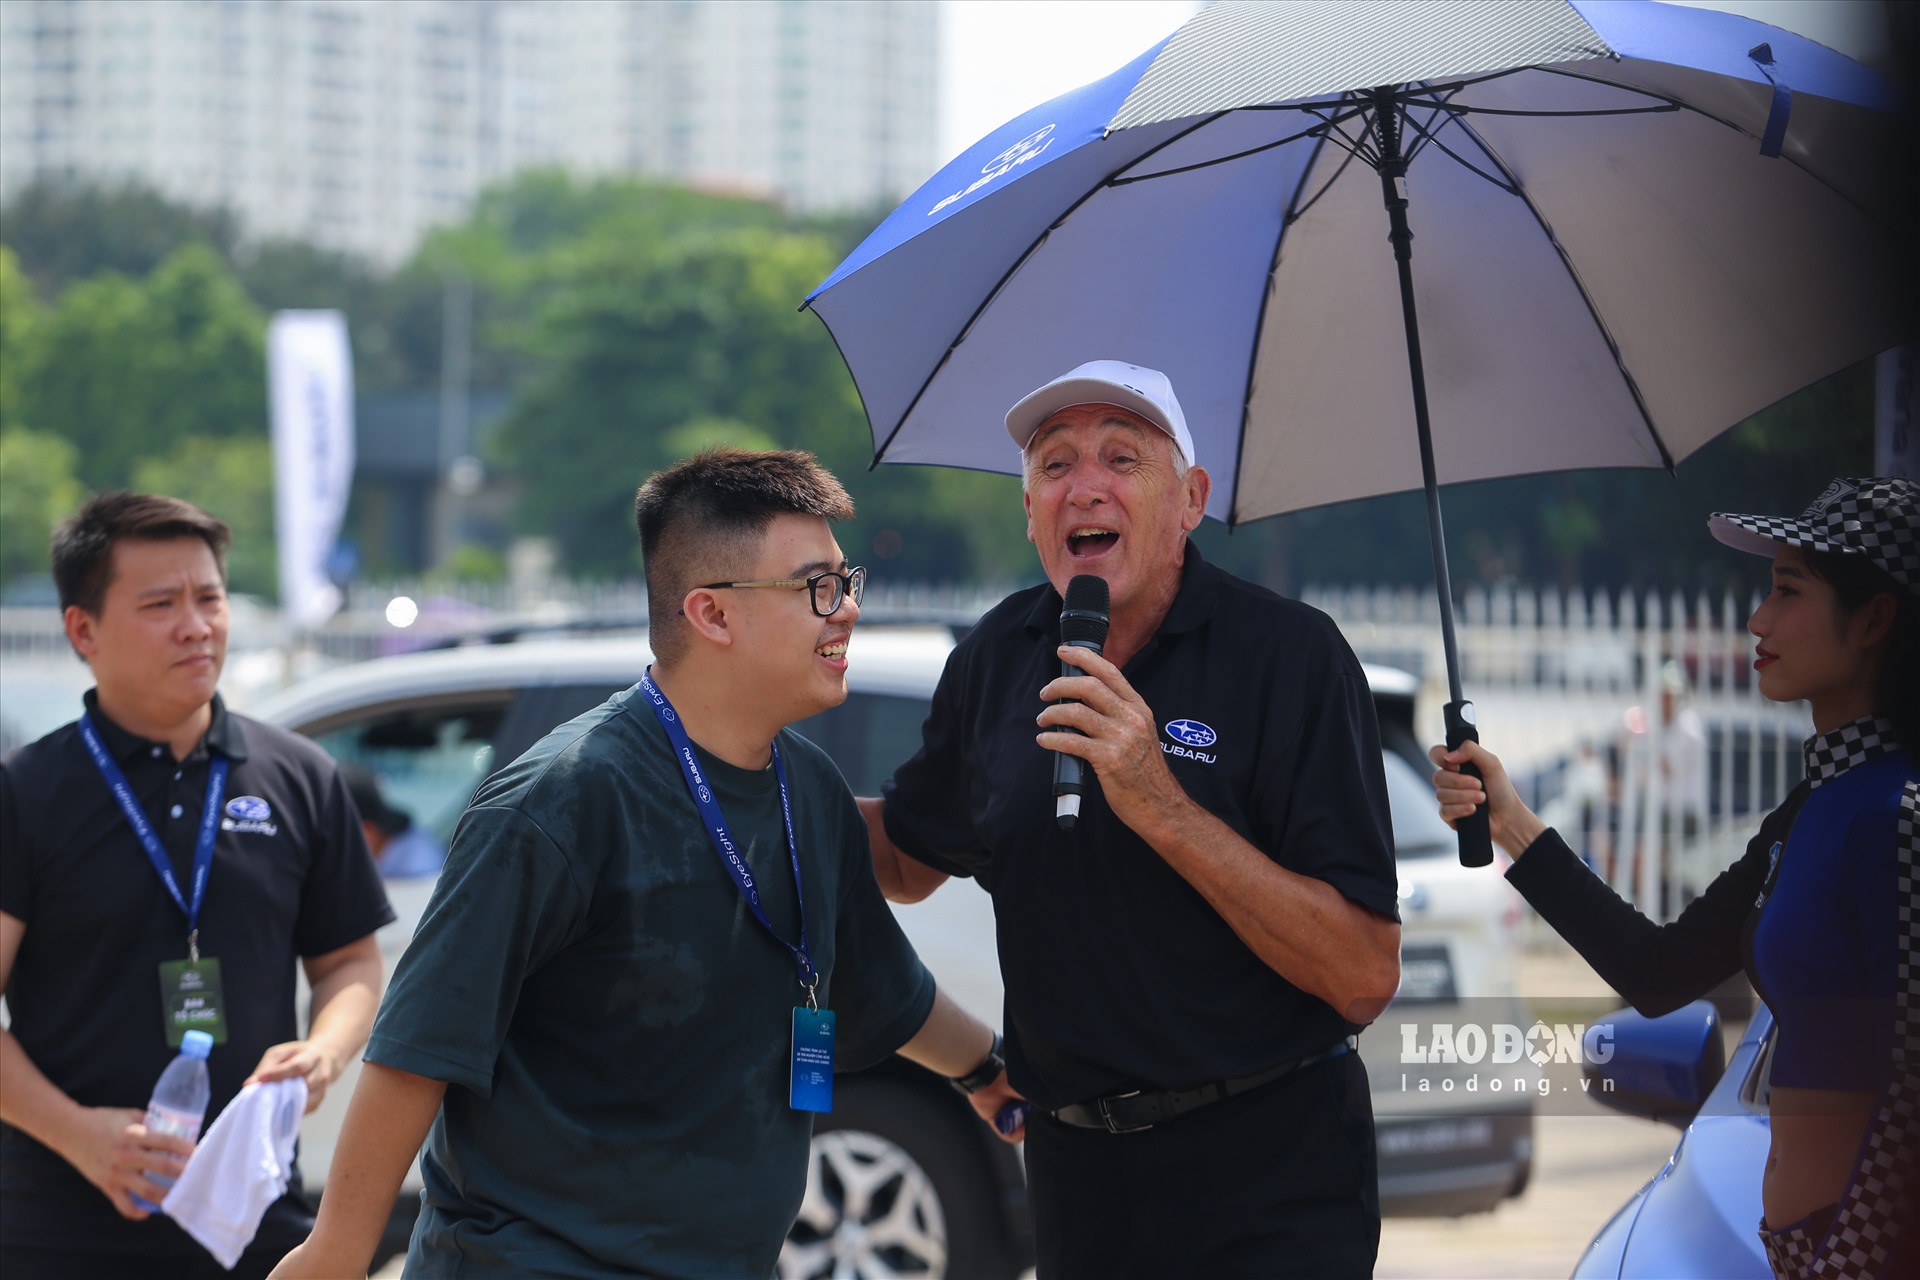 Người hâm mộ tại Việt Nam một lần nữa lại được thưởng ngoạn những cú xoay ngoặt, vượt tốc trứ danh của Russ Swift trên những chiếc ôtô. 